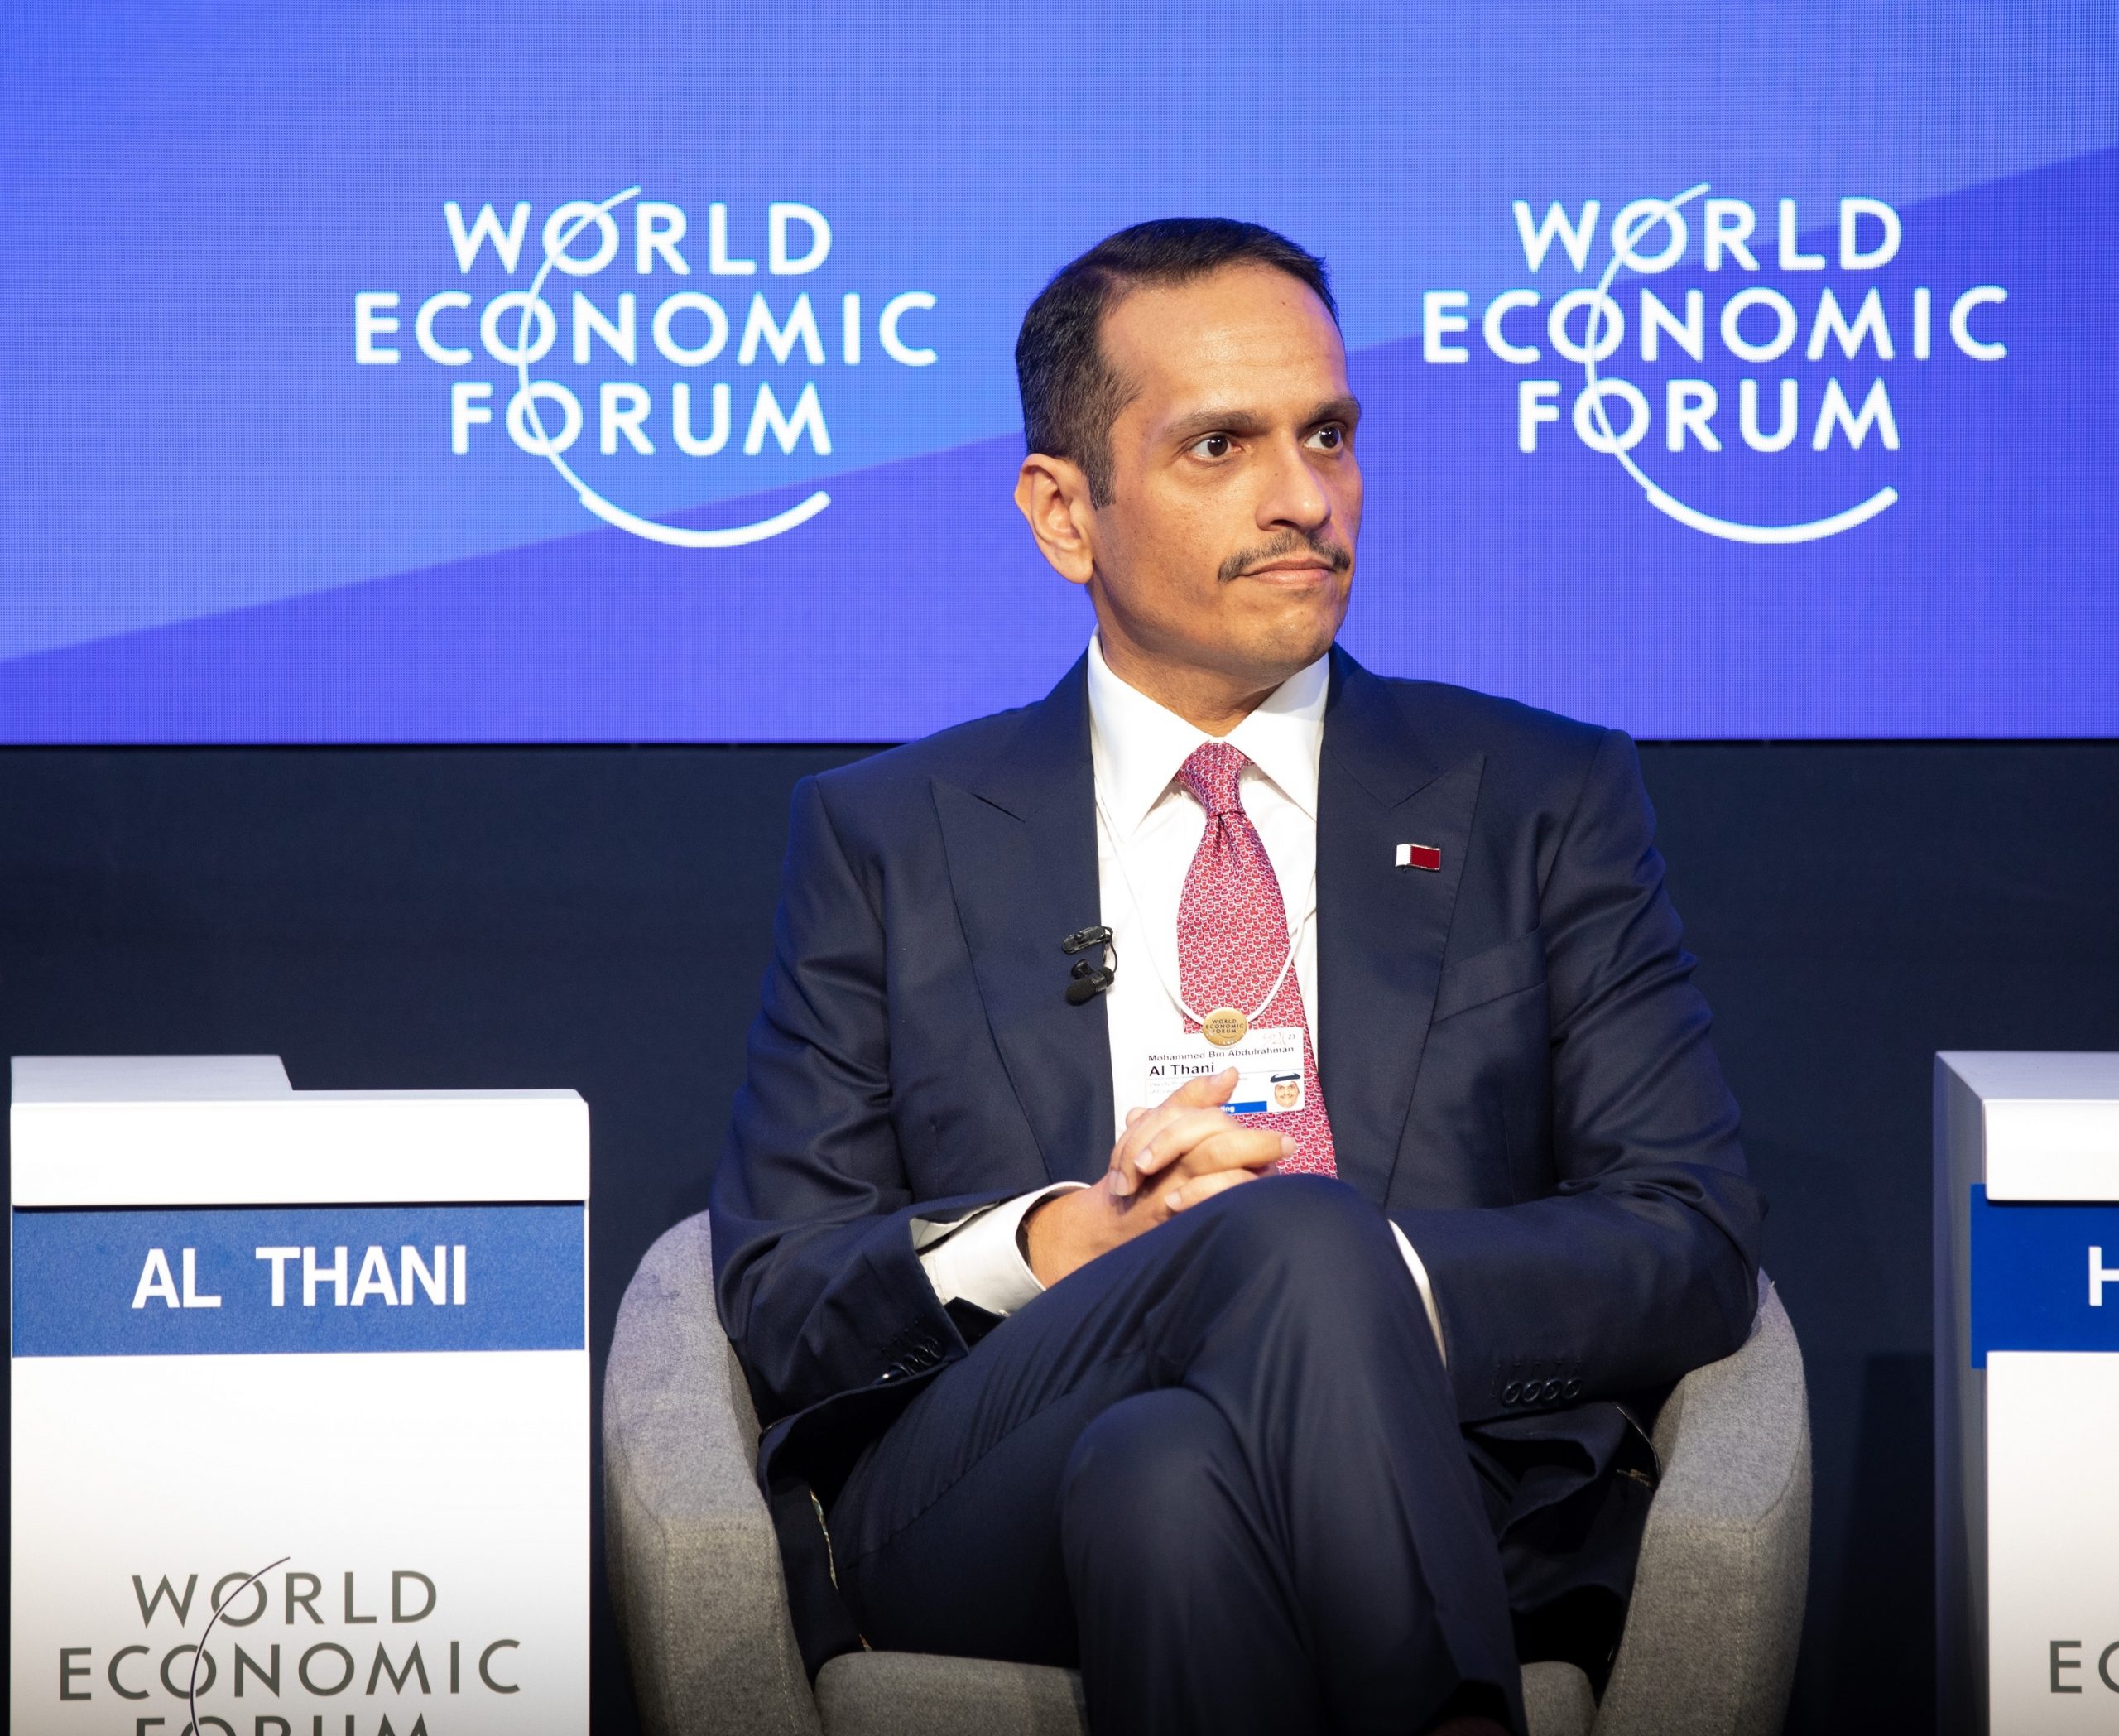 Qatar Participates in World Economic Forum